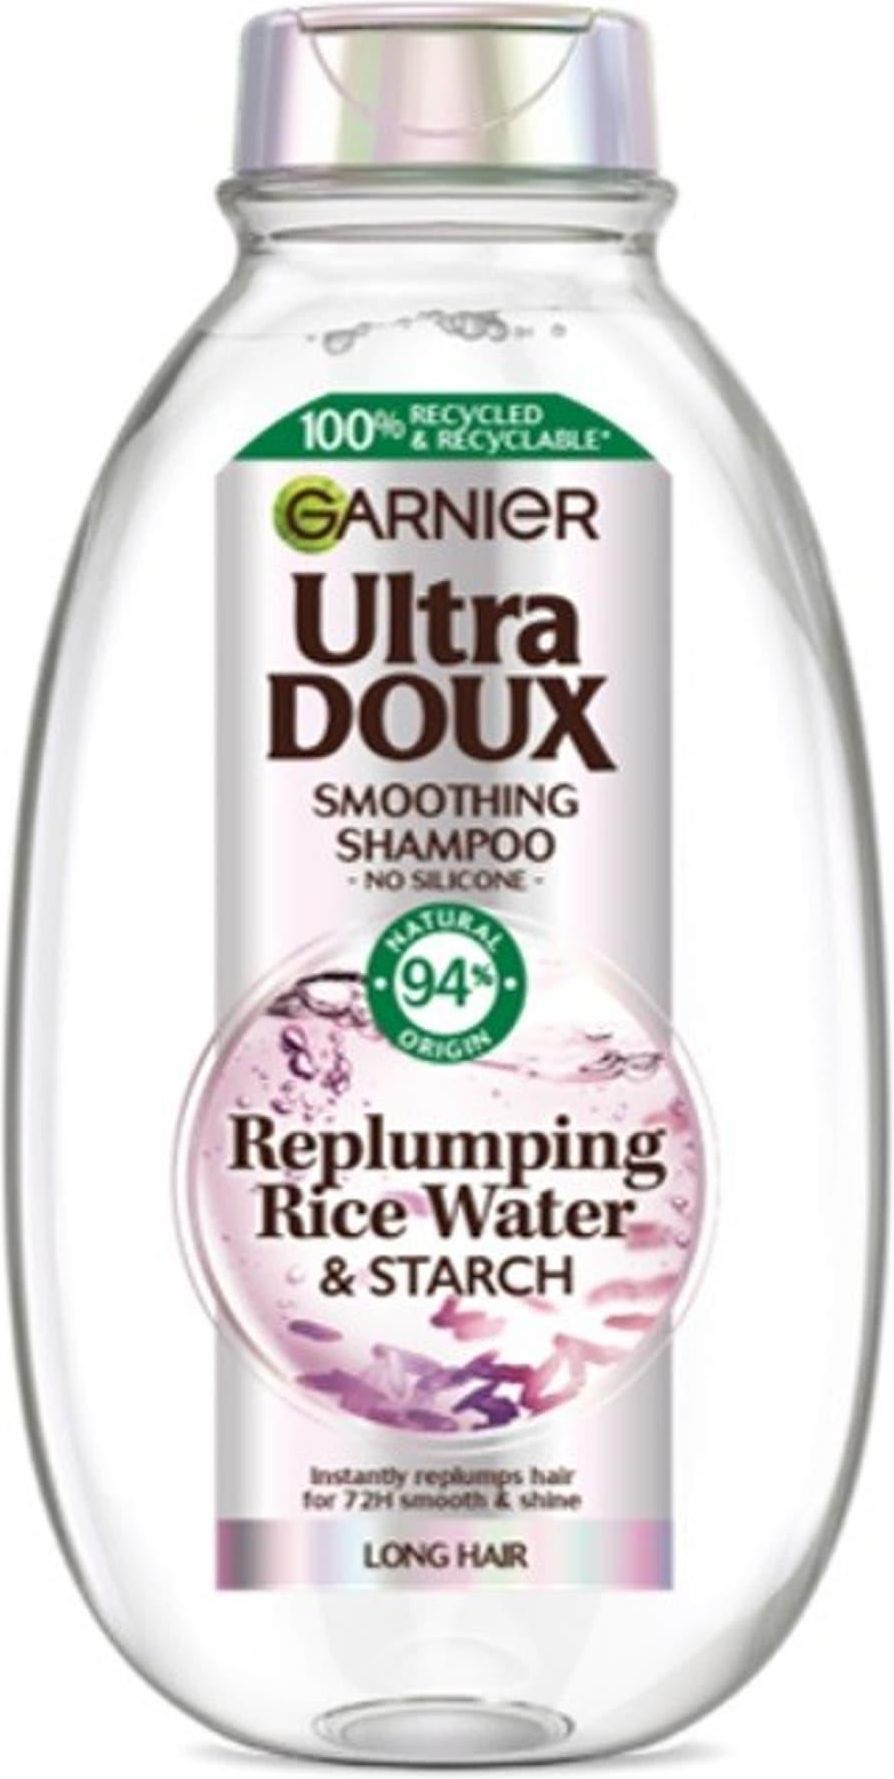 garnier ultra doux szampon objetosc natura